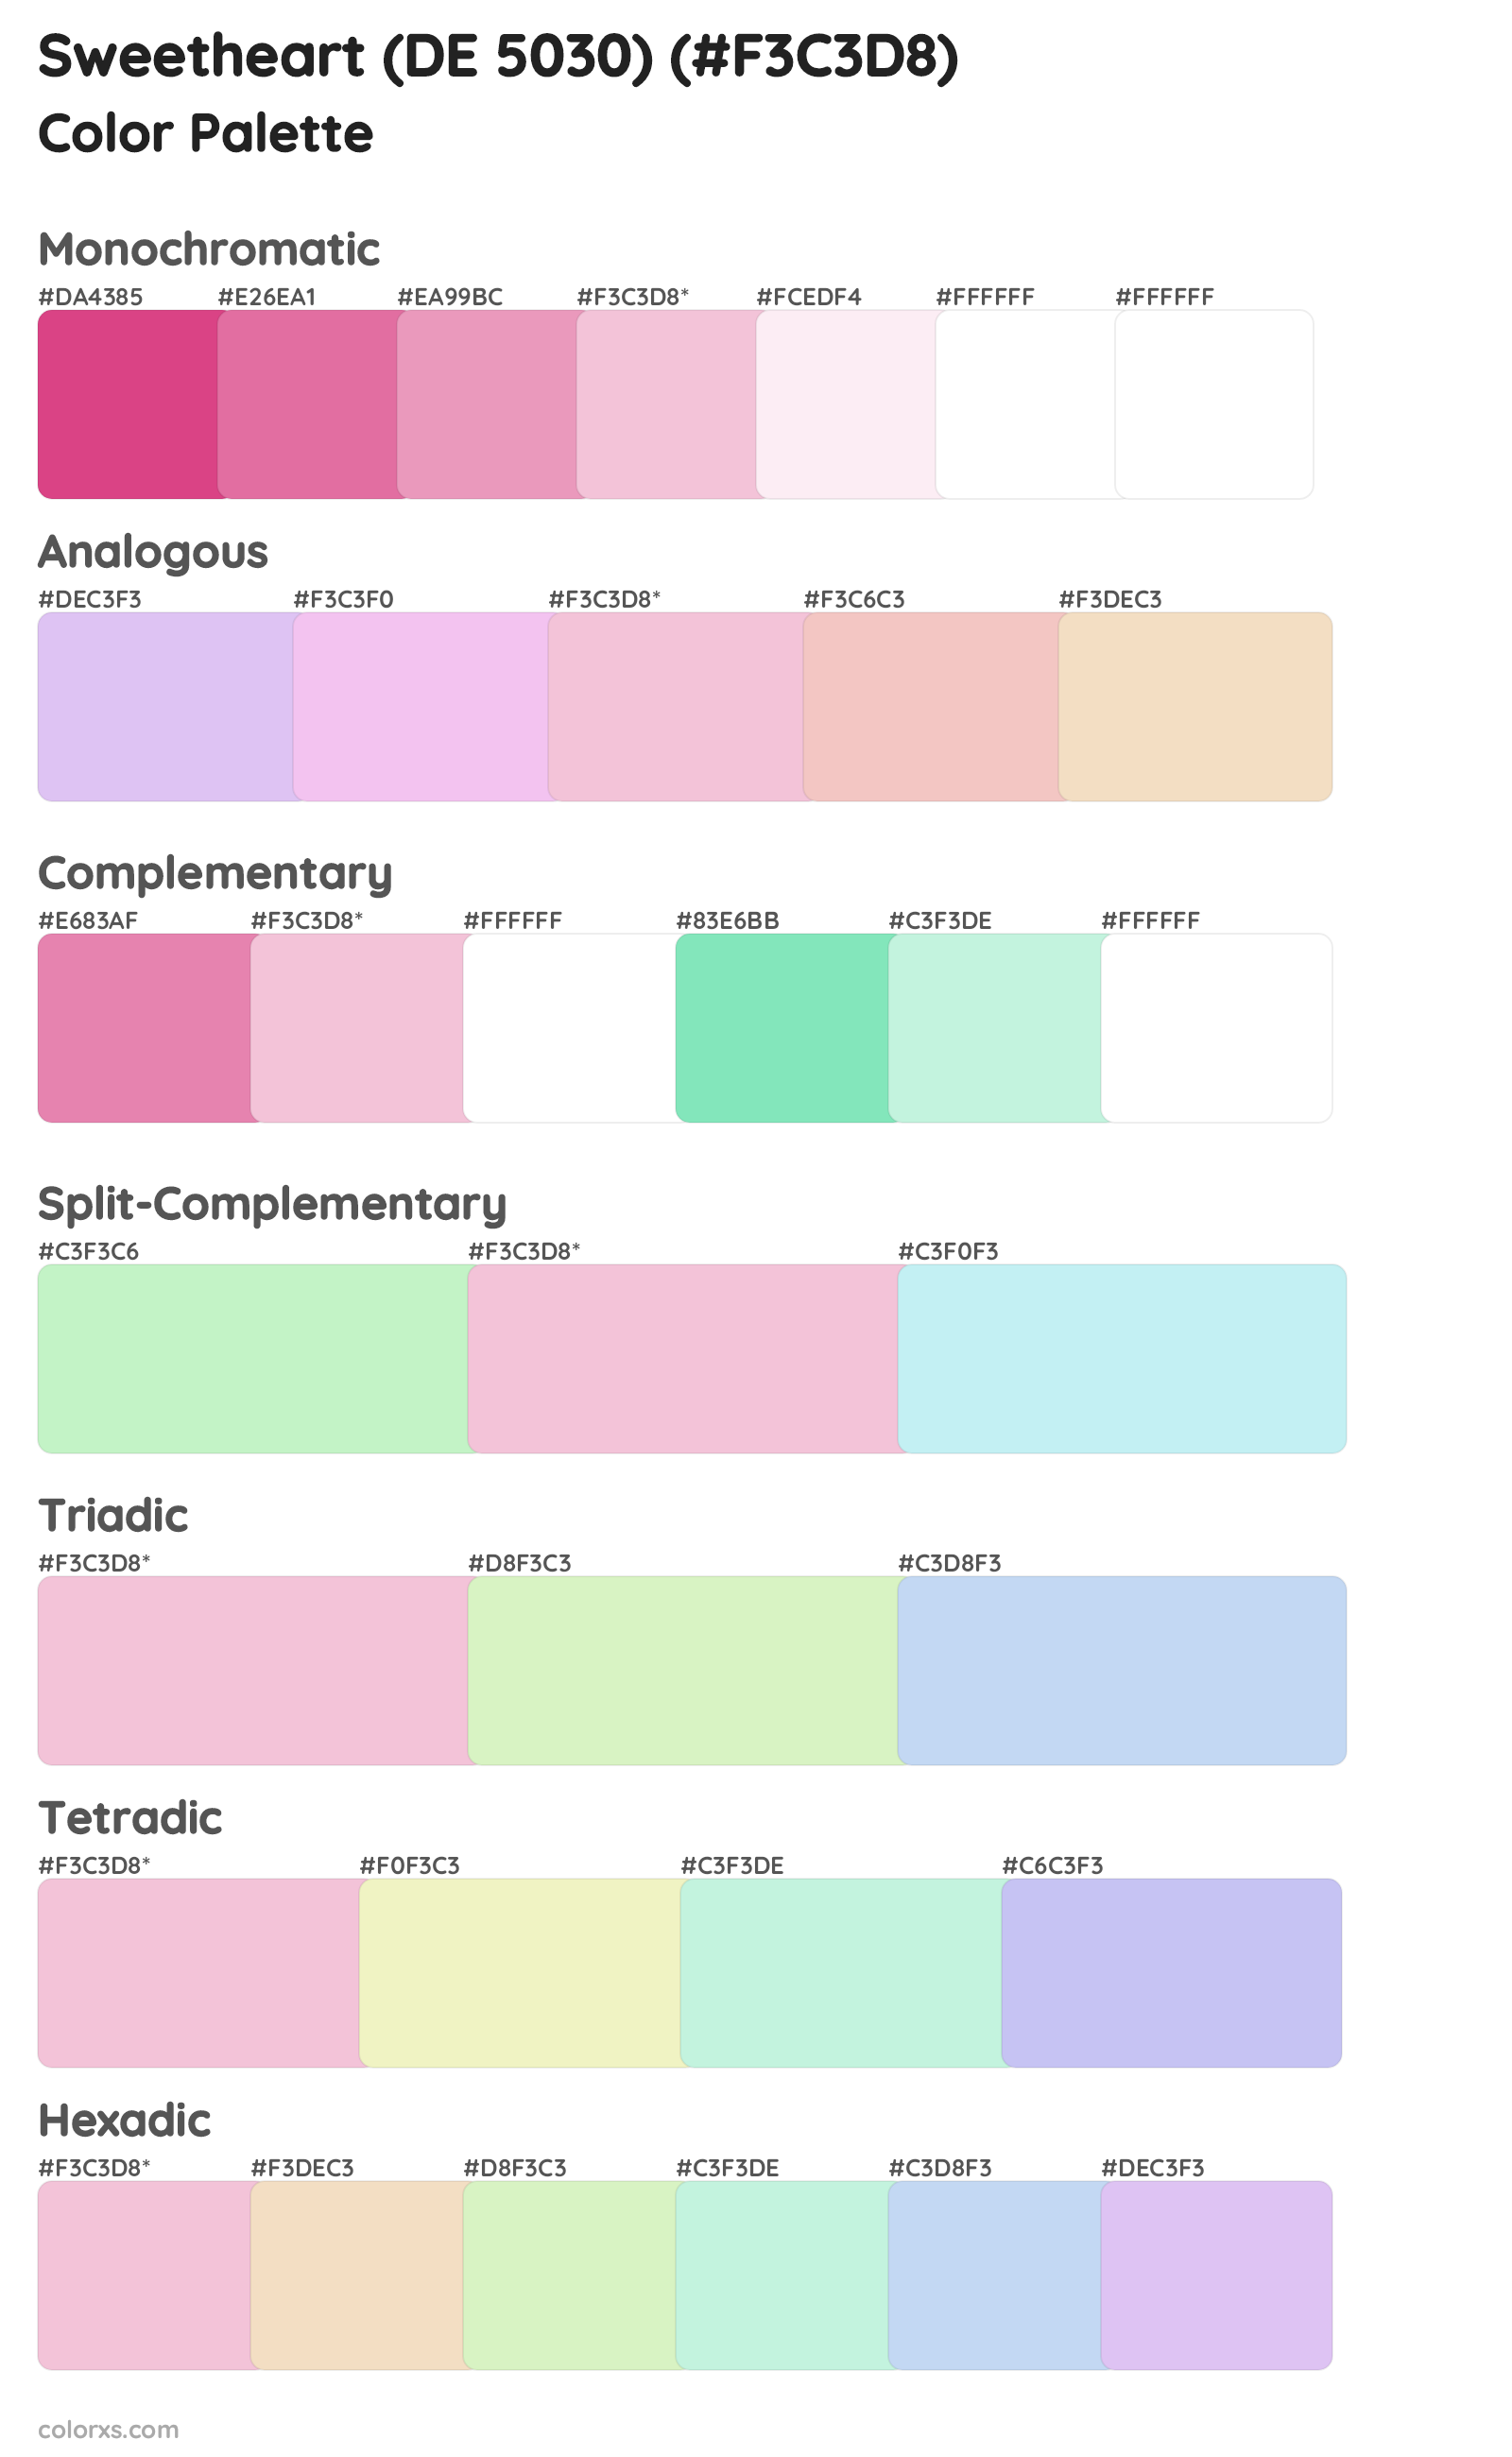 Sweetheart (DE 5030) Color Scheme Palettes